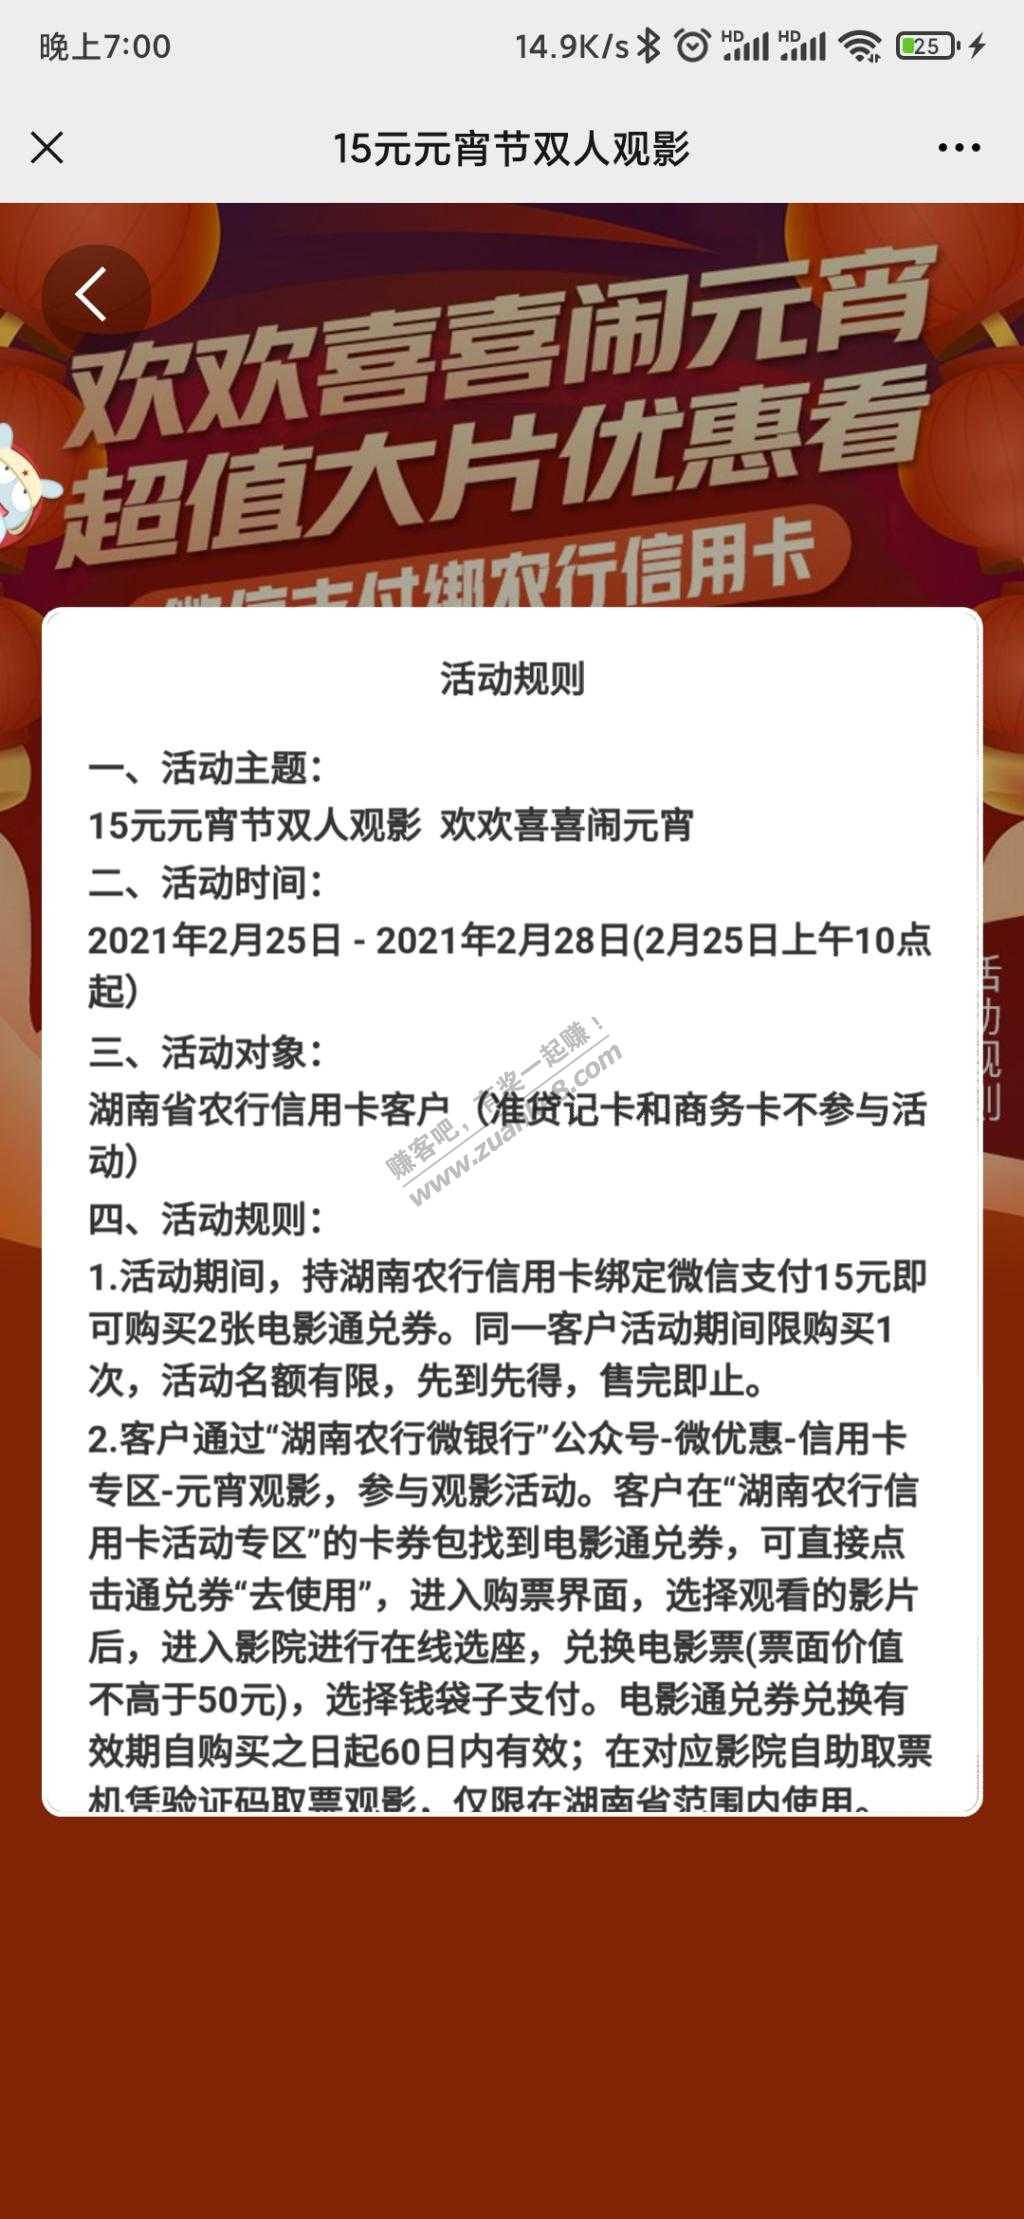 湖南农行电影票活动-15买2张50通用兑换券。-惠小助(52huixz.com)